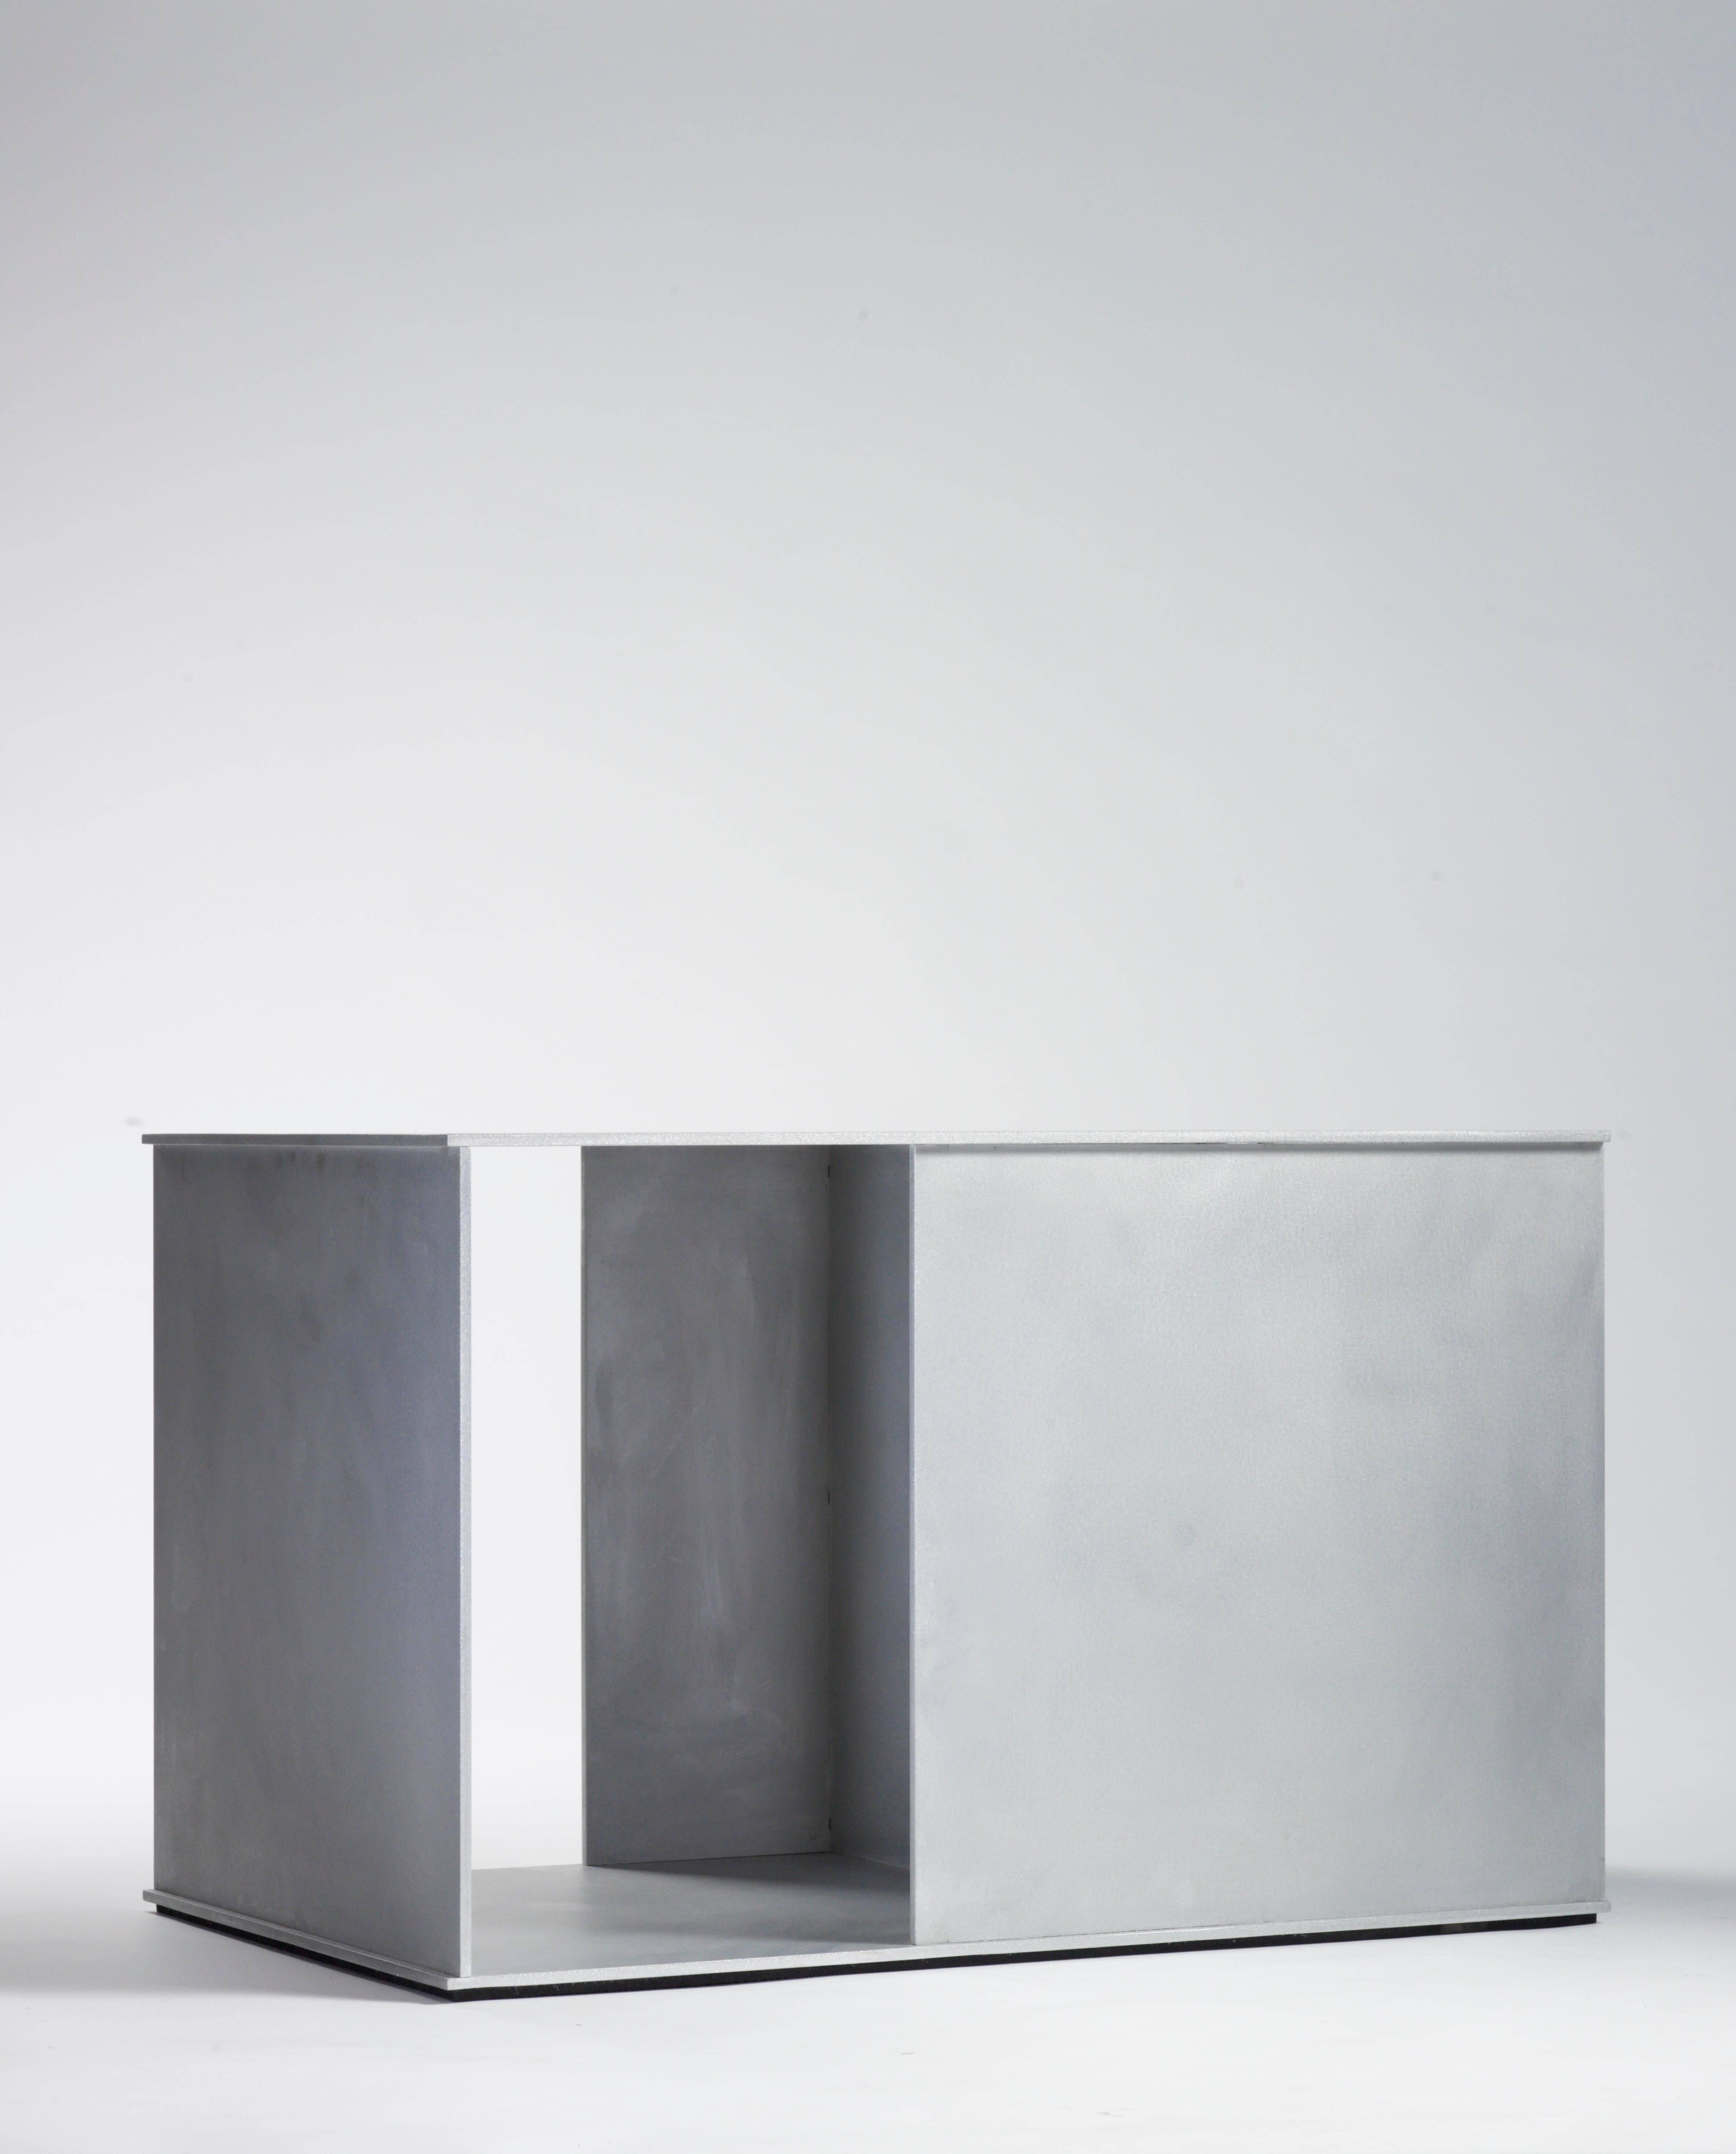 Table de ratio en plaque d'aluminium de 0,25 pouce d'épaisseur, faisant partie de l'exposition personnelle neuf variations à la galerie Mondo Cane en 2011. Des plaques d'aluminium découpées numériquement s'entrecroisent et sont fusionnées par des